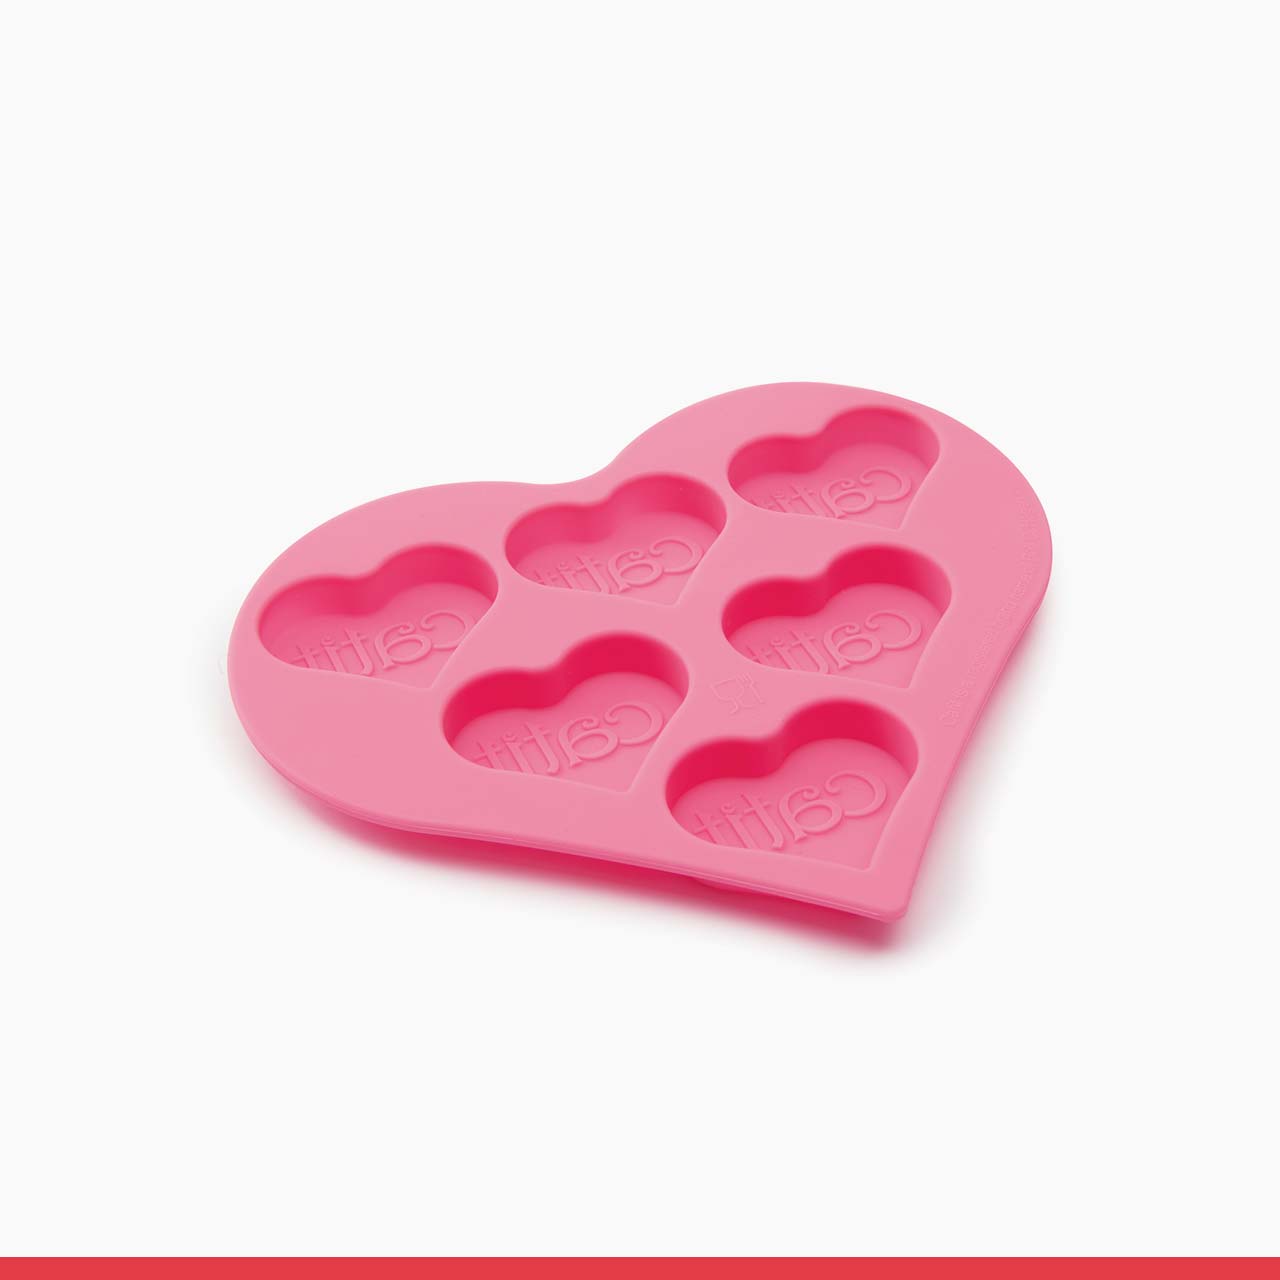 Catit Creamy Heart-shaped Silicone Ice Tray